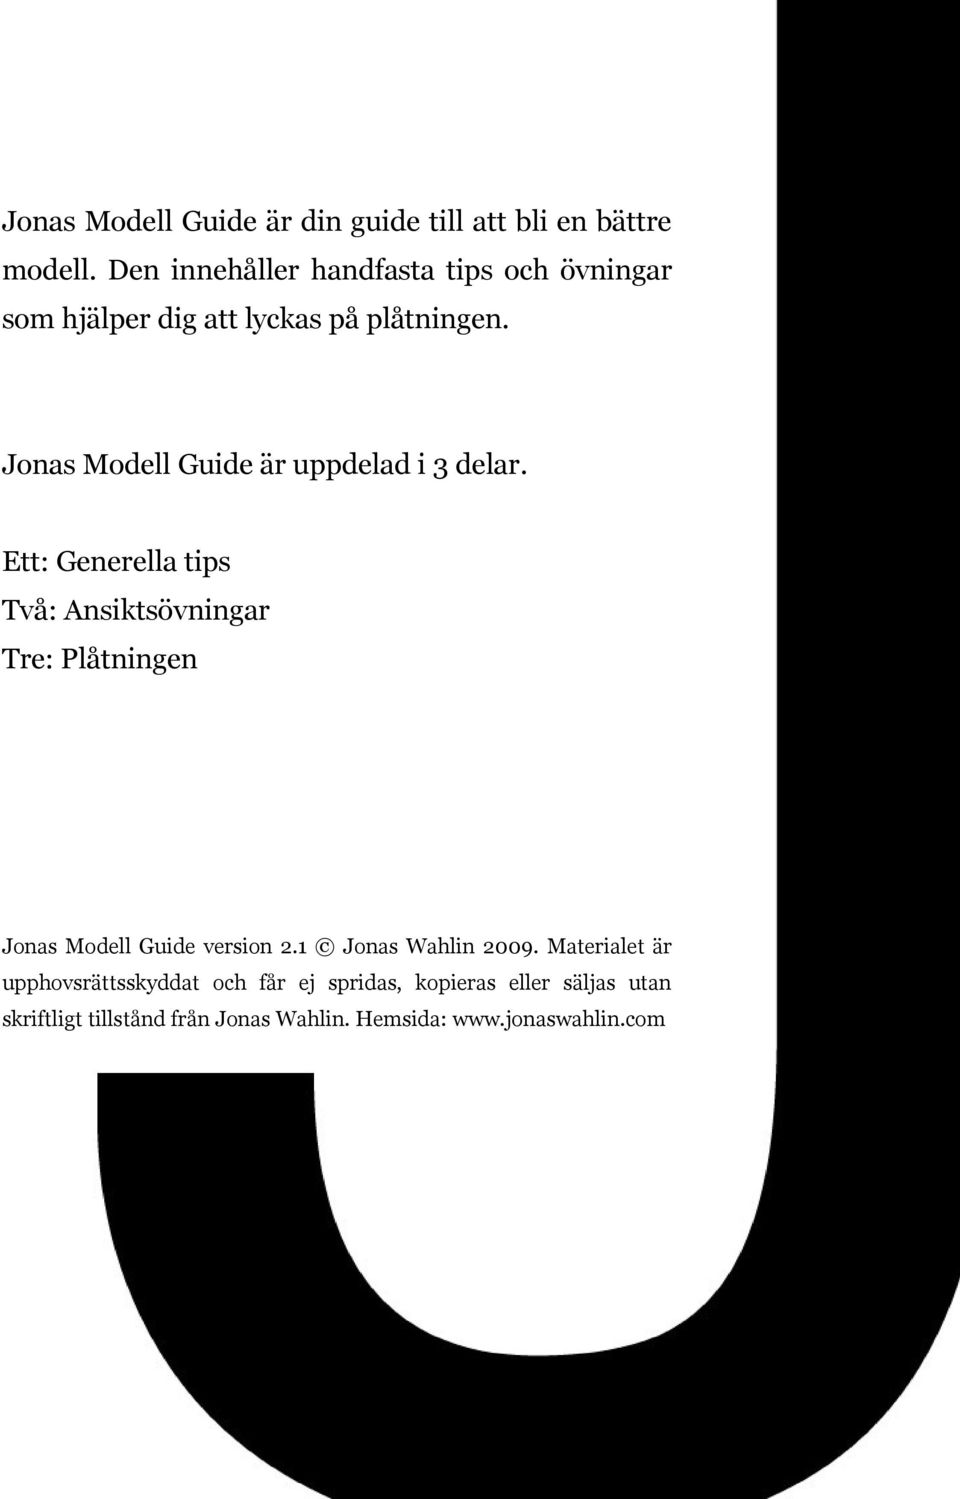 Jonas Modell Guide är uppdelad i 3 delar.